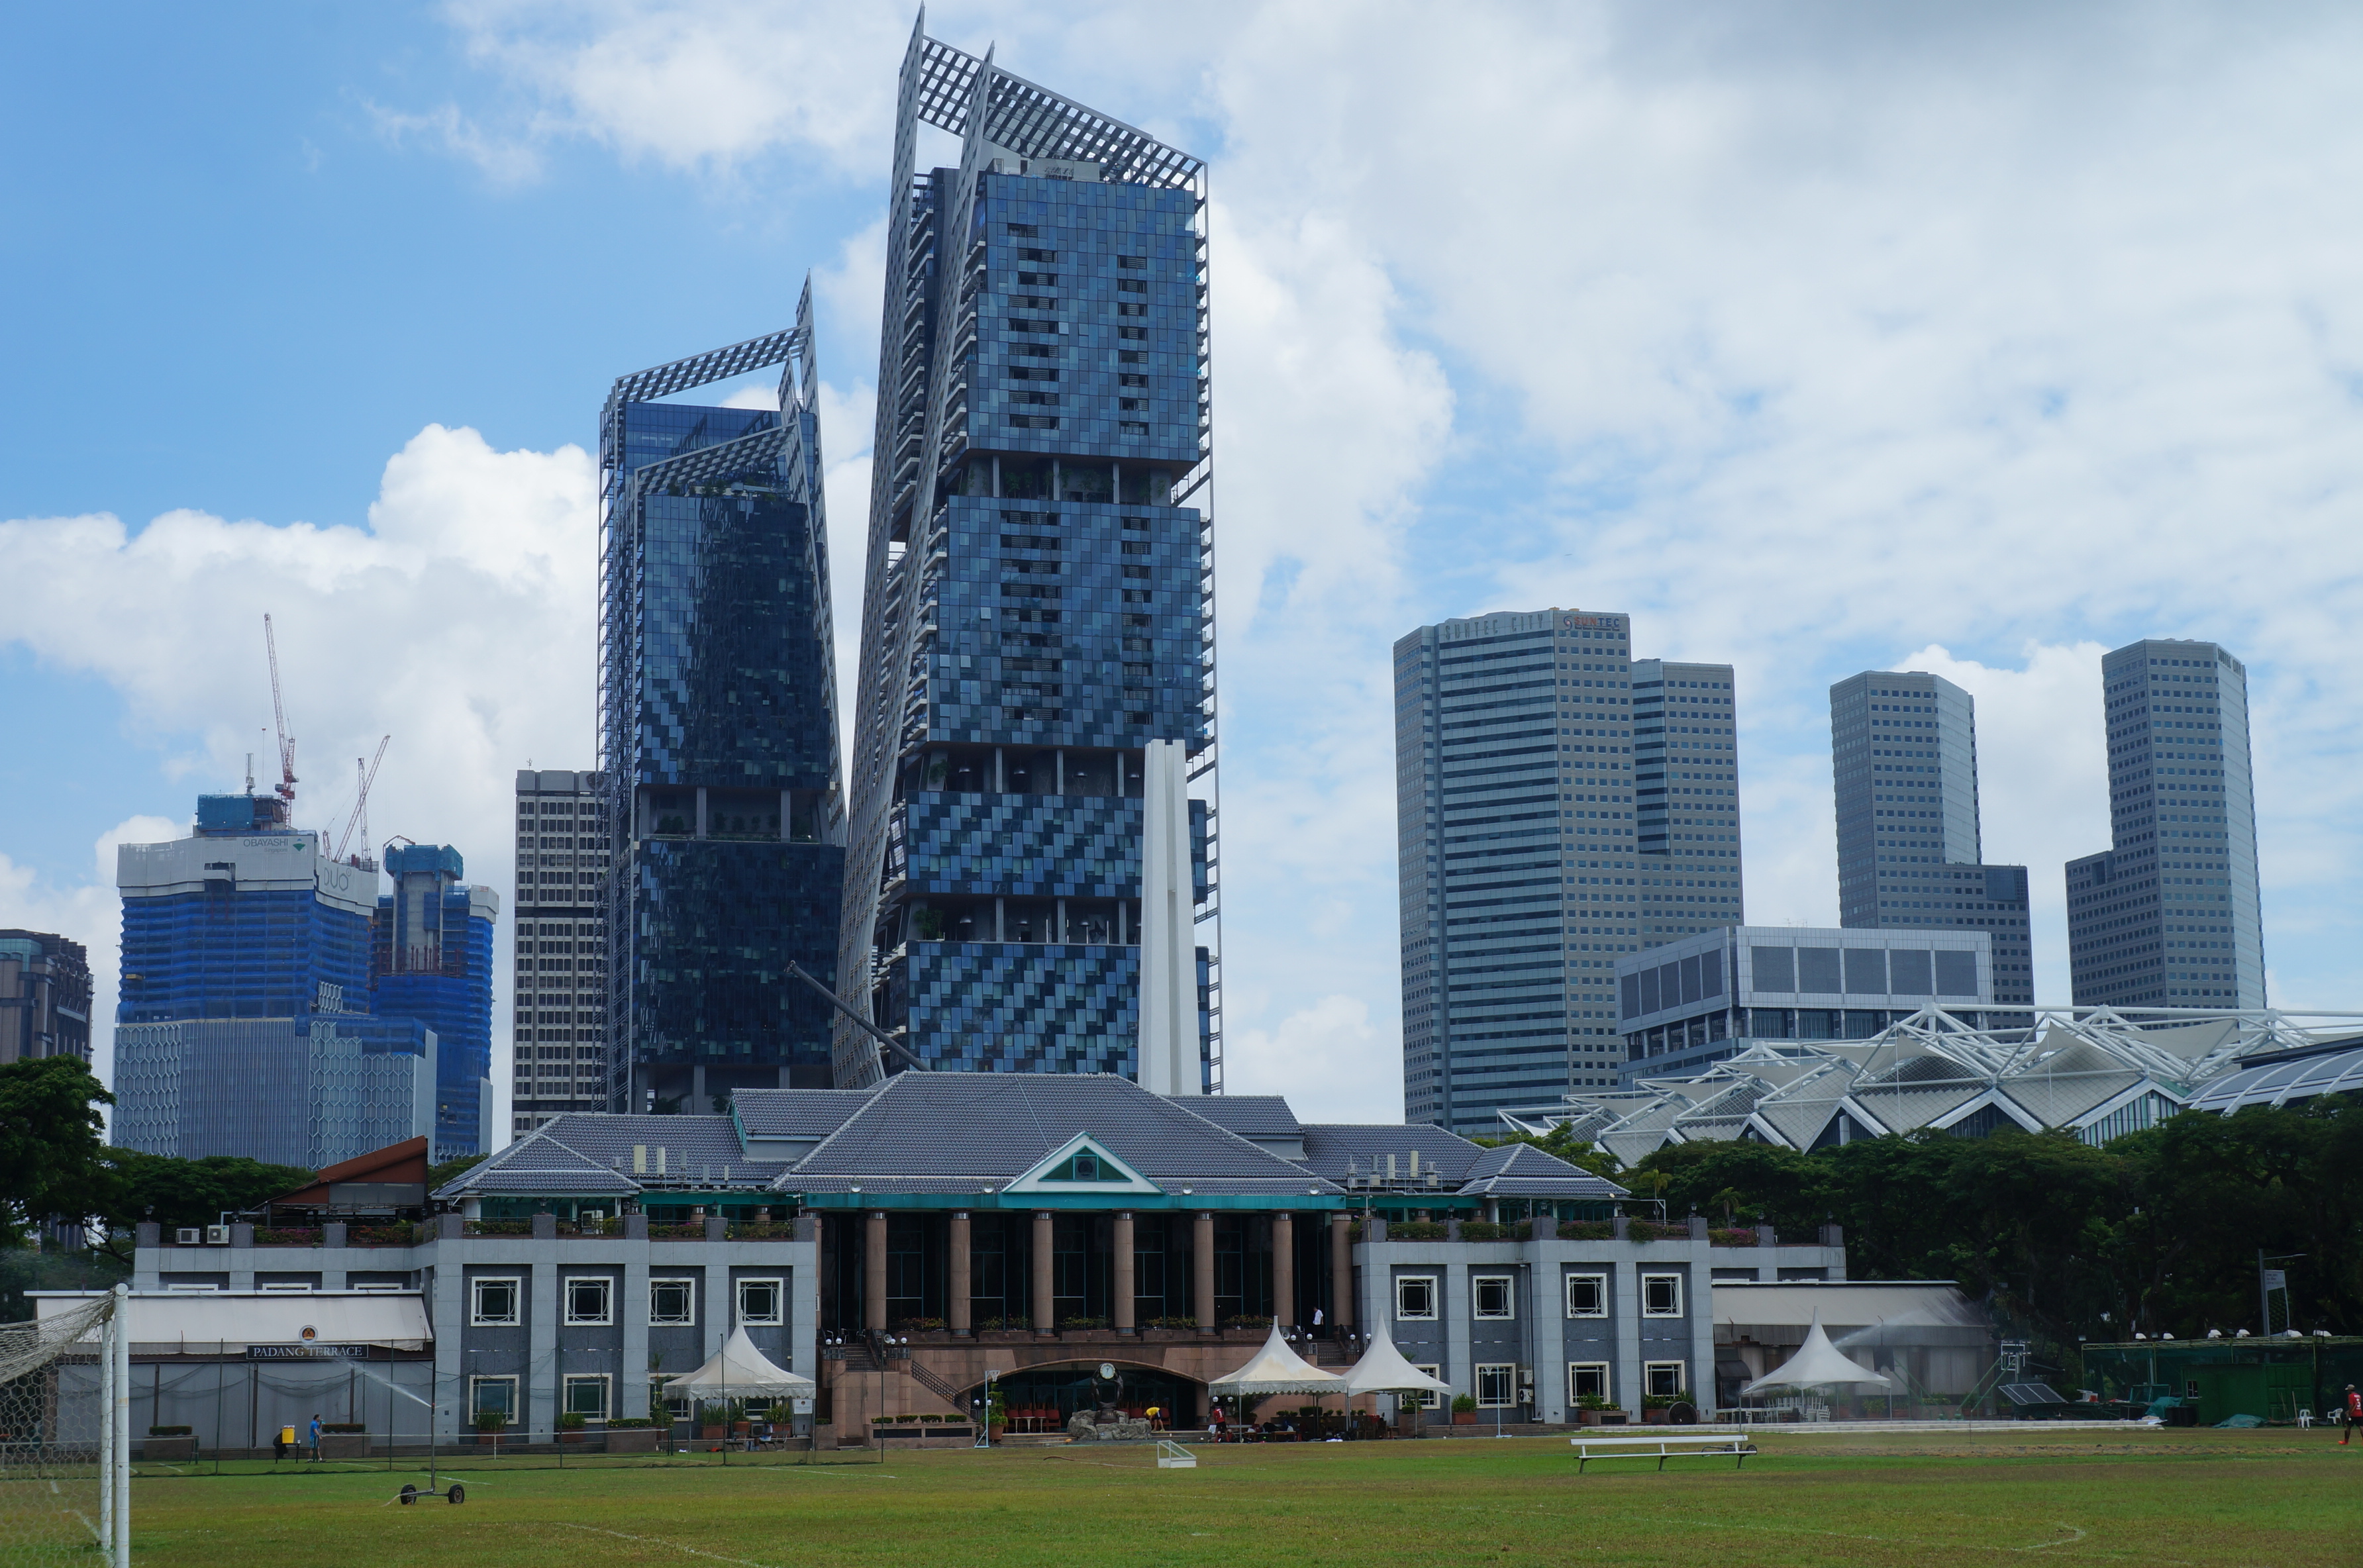 【携程攻略】新加坡政府大厦大草场景点,离开圣安德烈教堂,观赏了其门